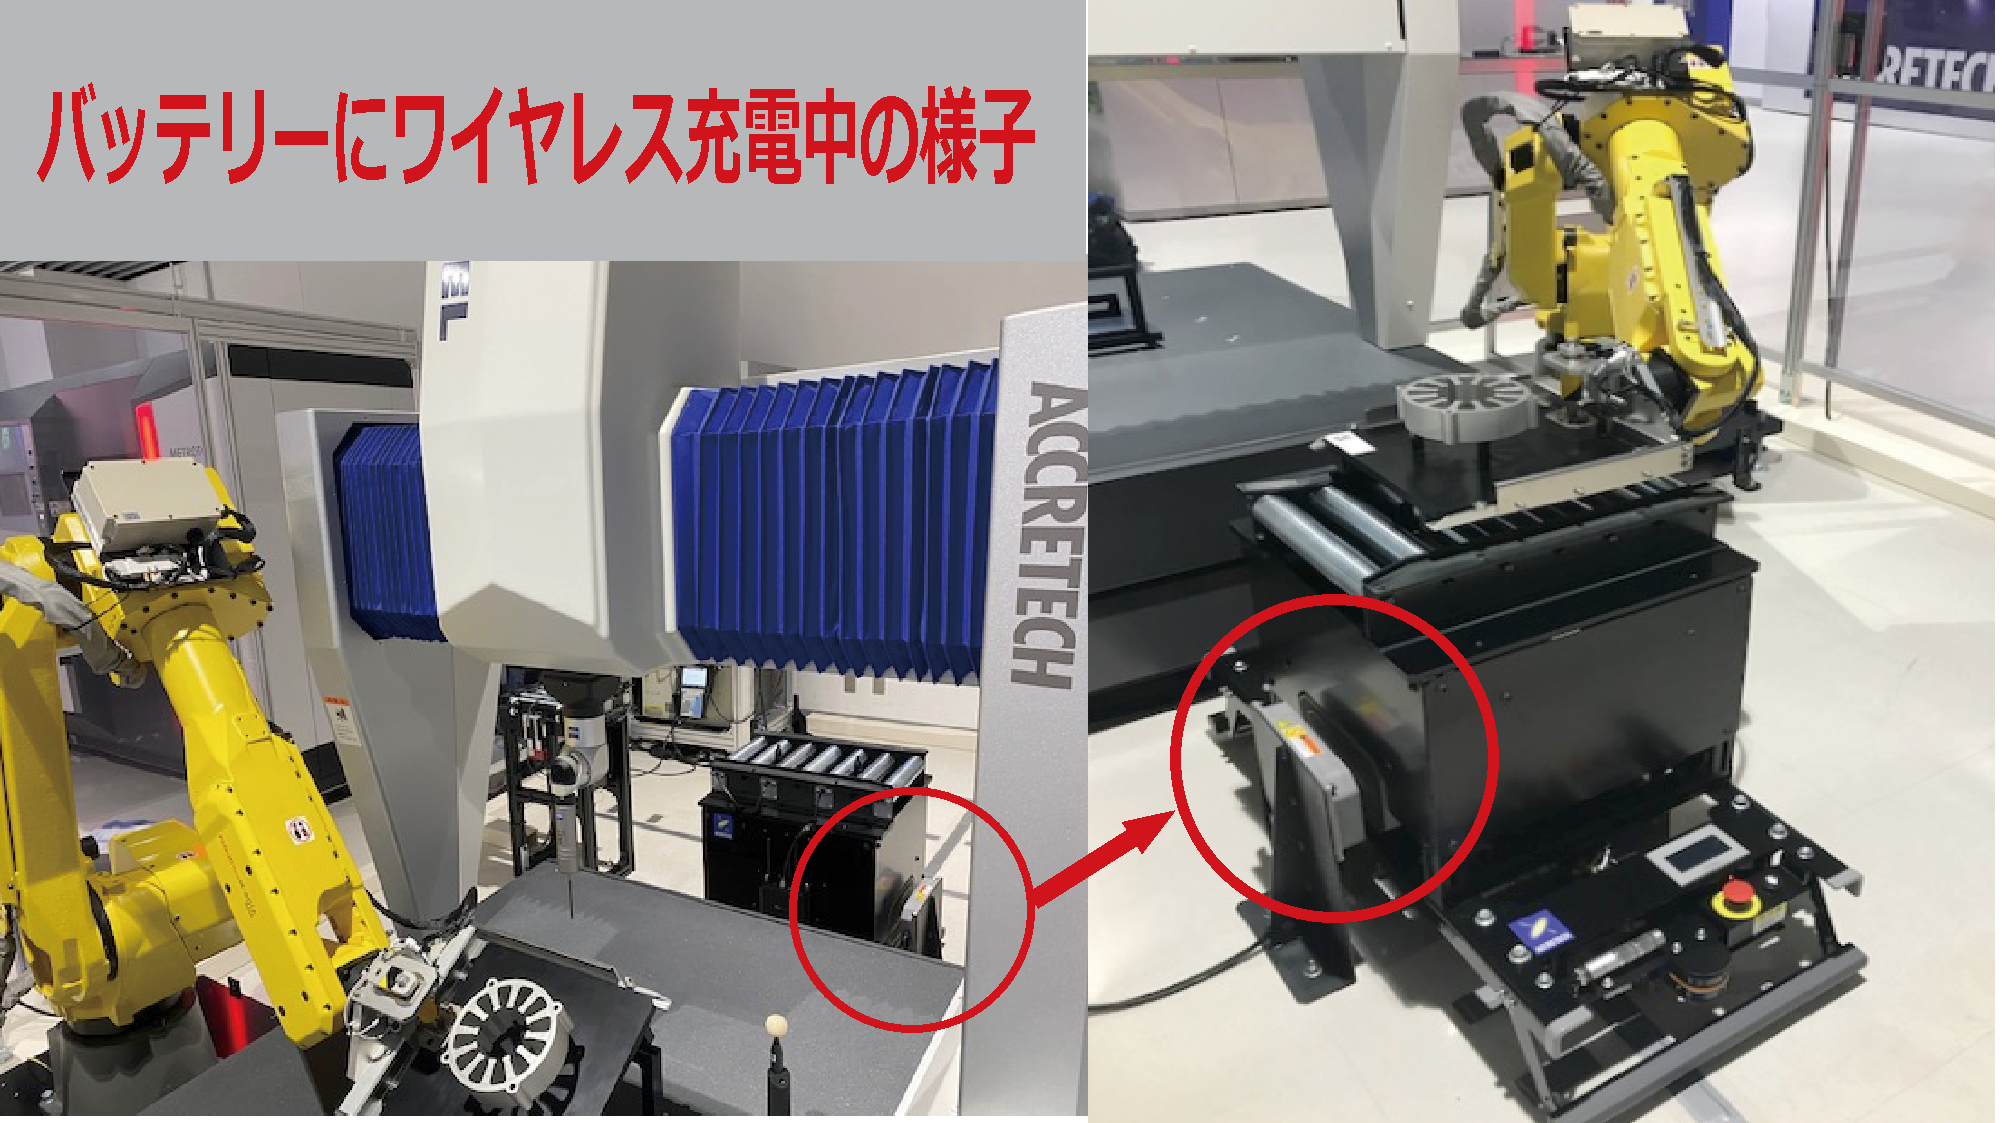 【導入事例】㈱東京精密様の計測センター自動化セルラインへ600Wワイヤレス充電システムが採用されました！